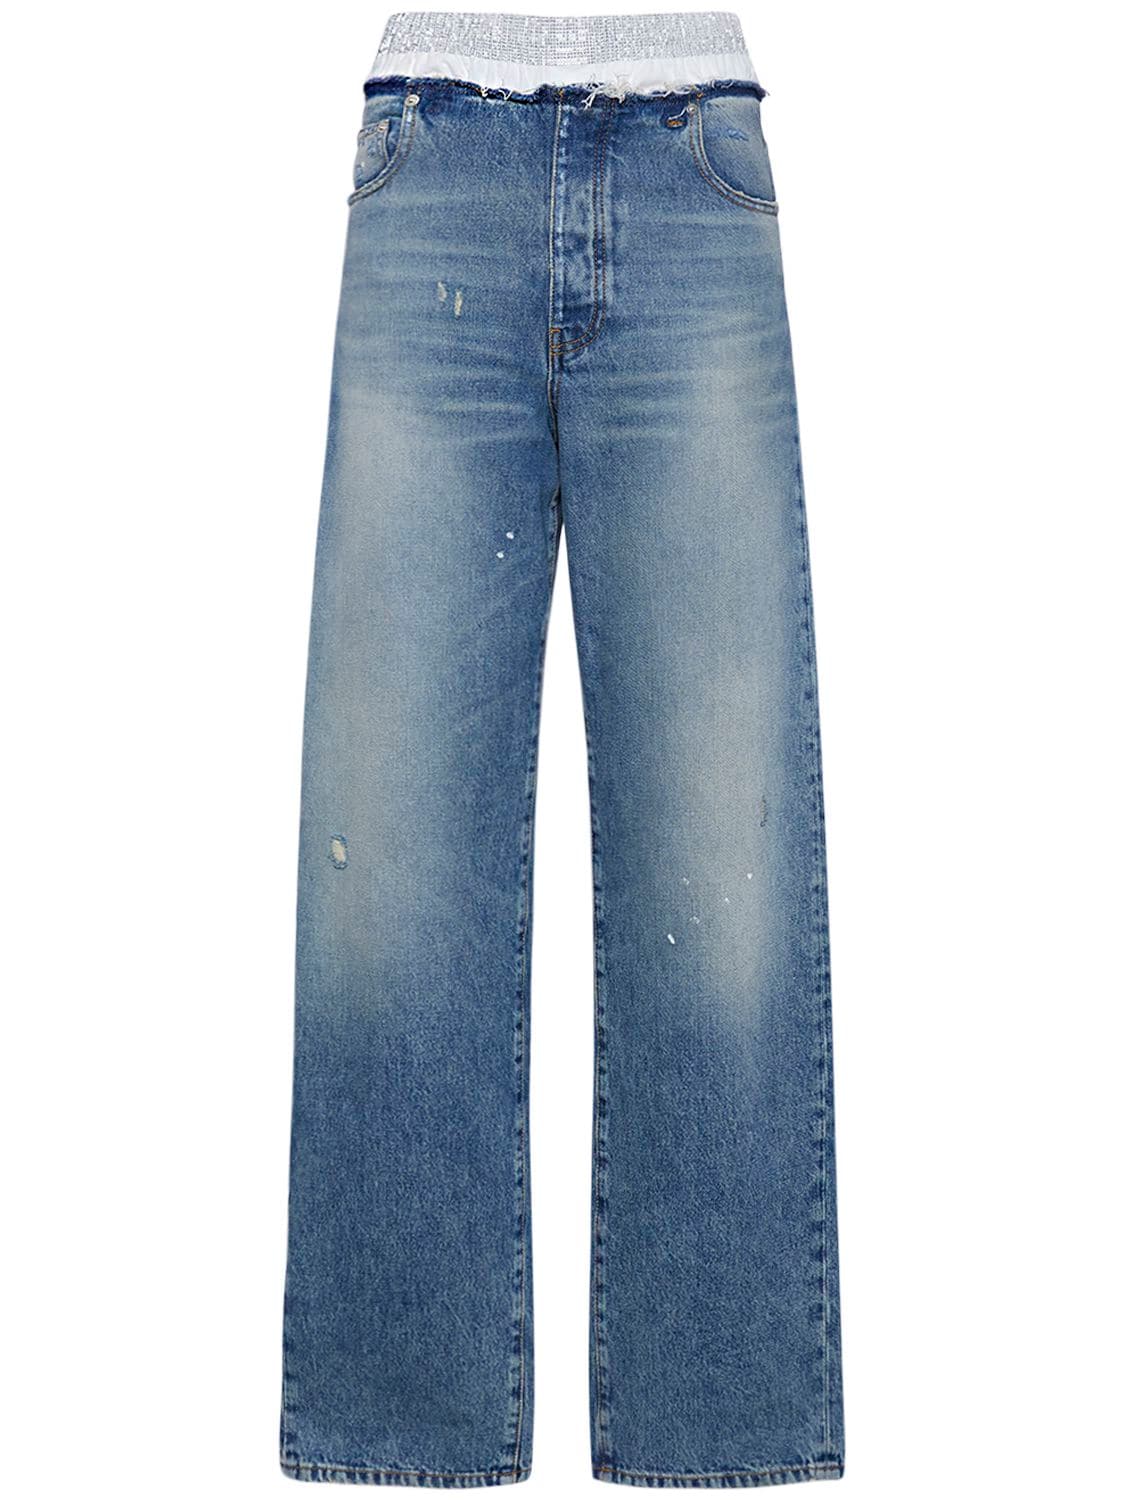 Mujer Jeans Con Cinturilla Doble 25 - DARKPARK - Modalova